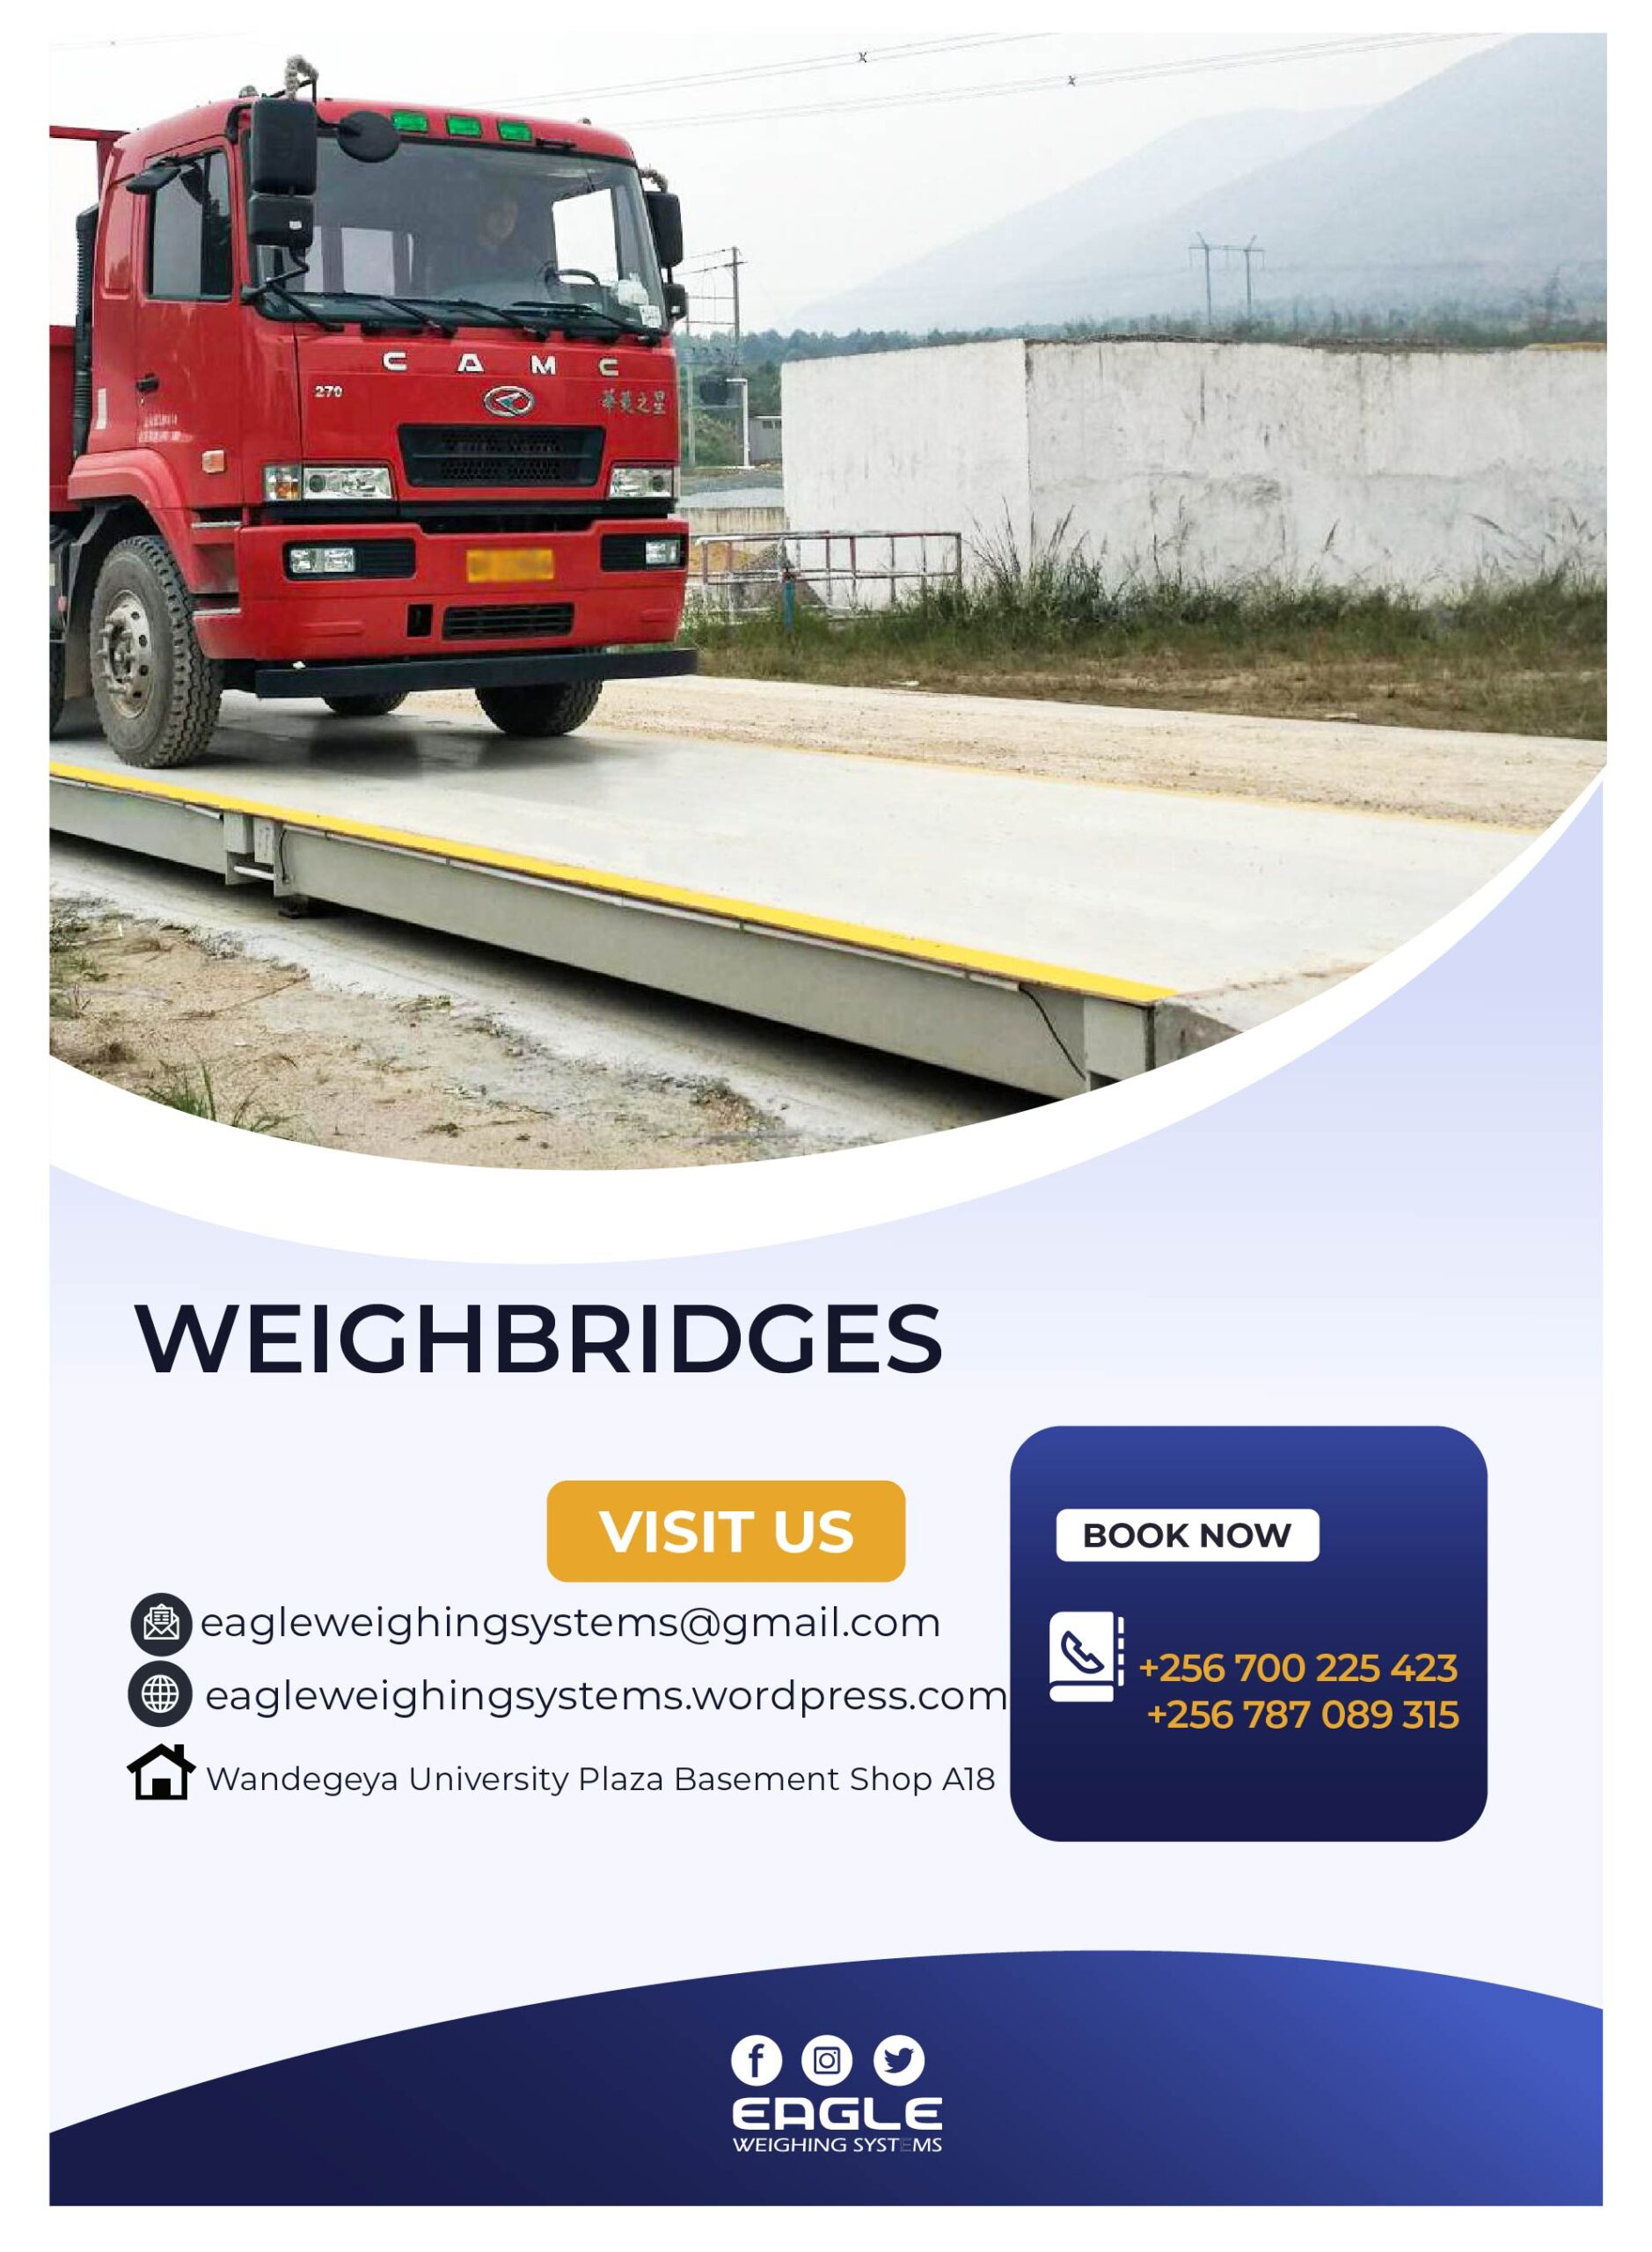 Weighbridge Supplier In Uganda